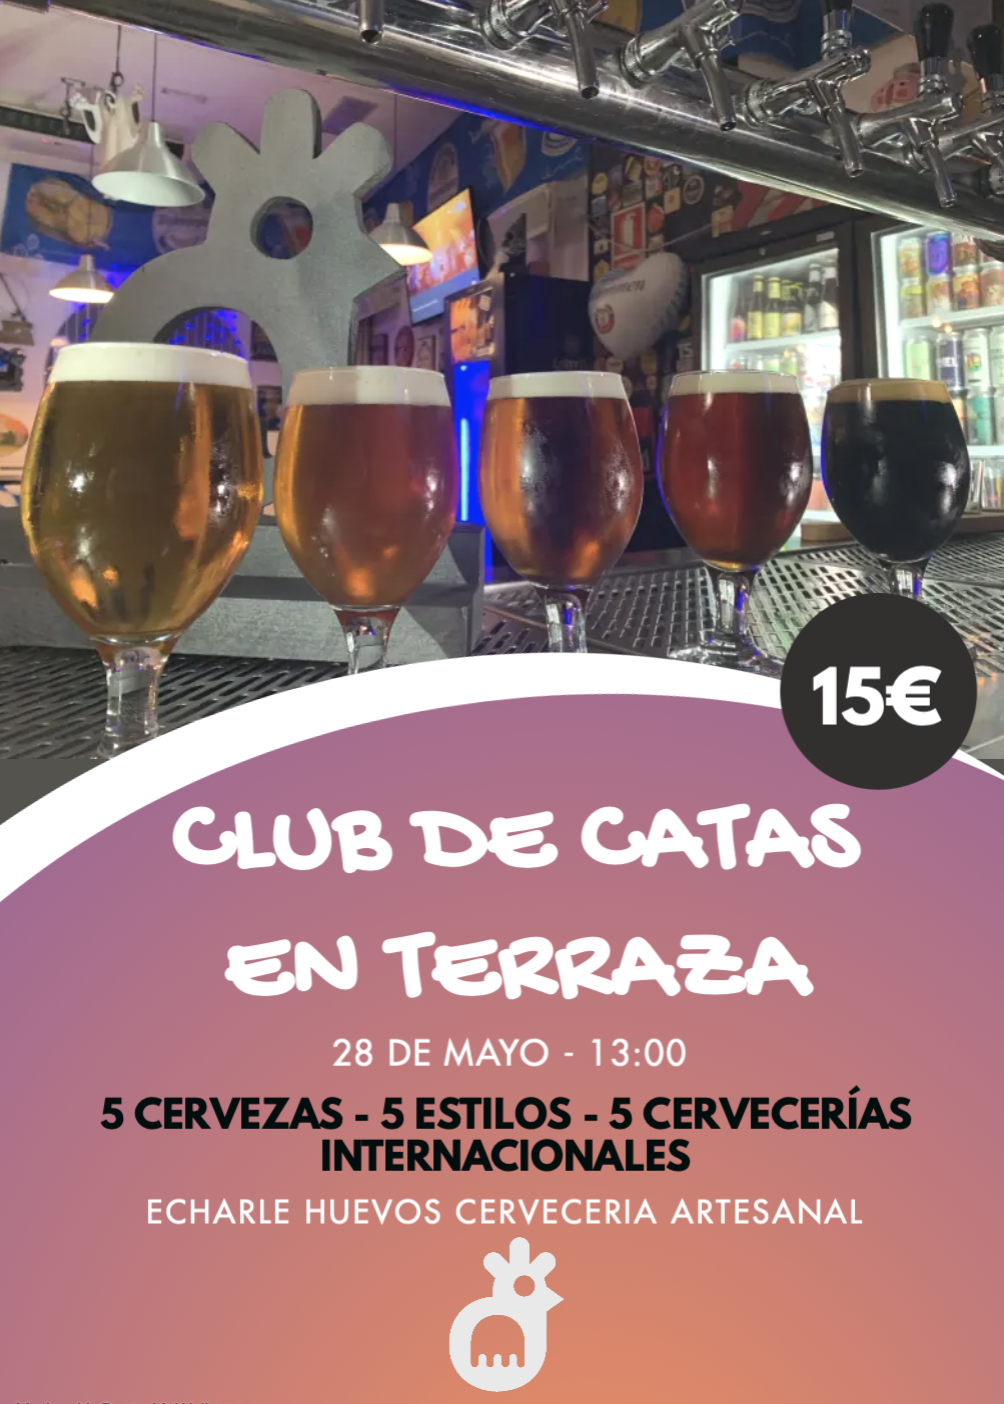 CLUB DE CATAS en terraza - ECHARLE HUEVOS S 28 MAYO 13.00H